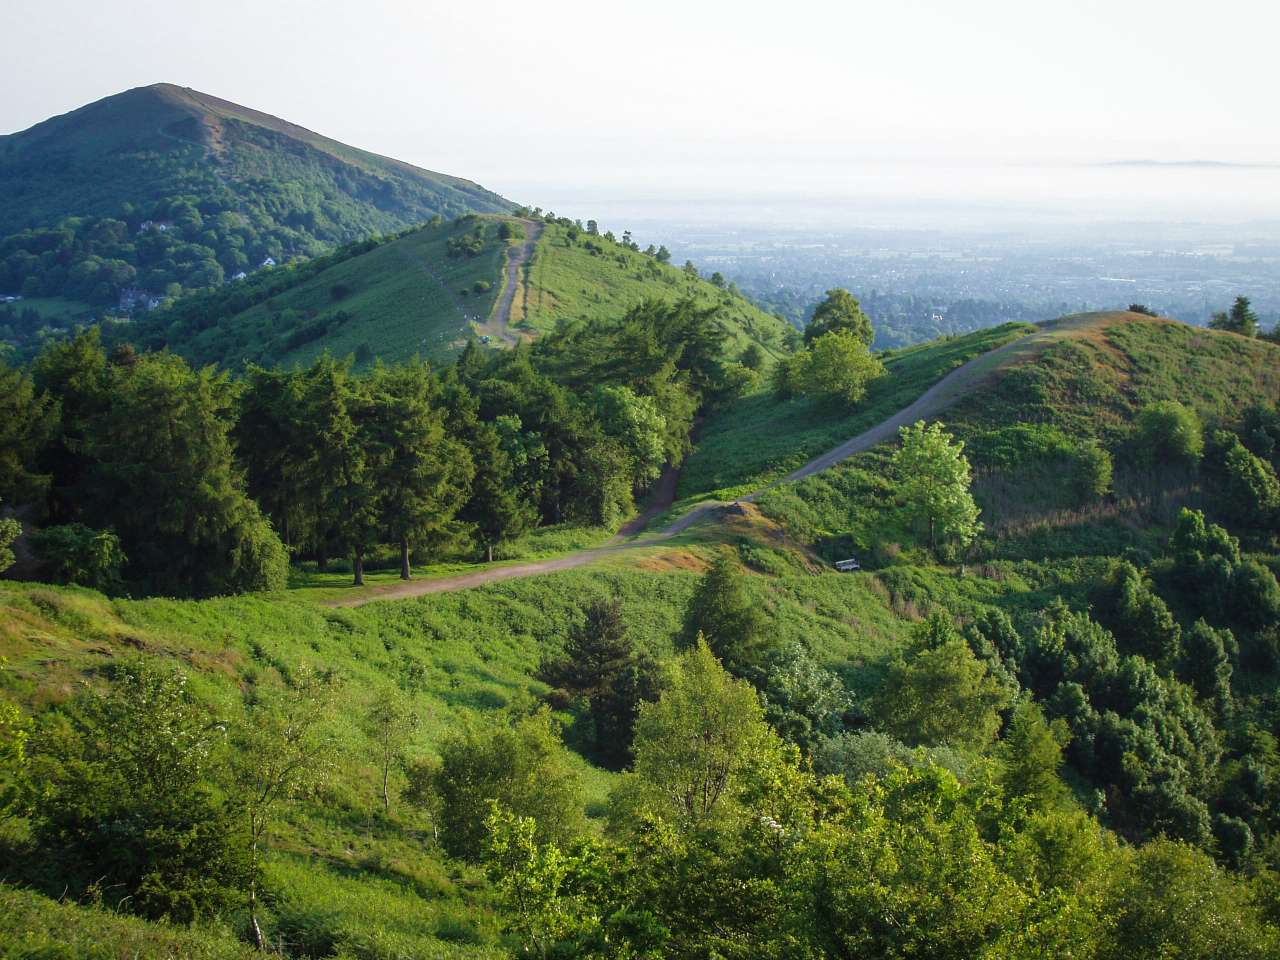 Οι λόφοι Malvern στο Ηνωμένο Βασίλειο, που ισχυρίζεται ο Alfred Watkins ότι έχουν μια γραμμή λέι που περνά κατά μήκος της κορυφογραμμής τους. © Πίστωση εικόνας: Wikimedia Commons